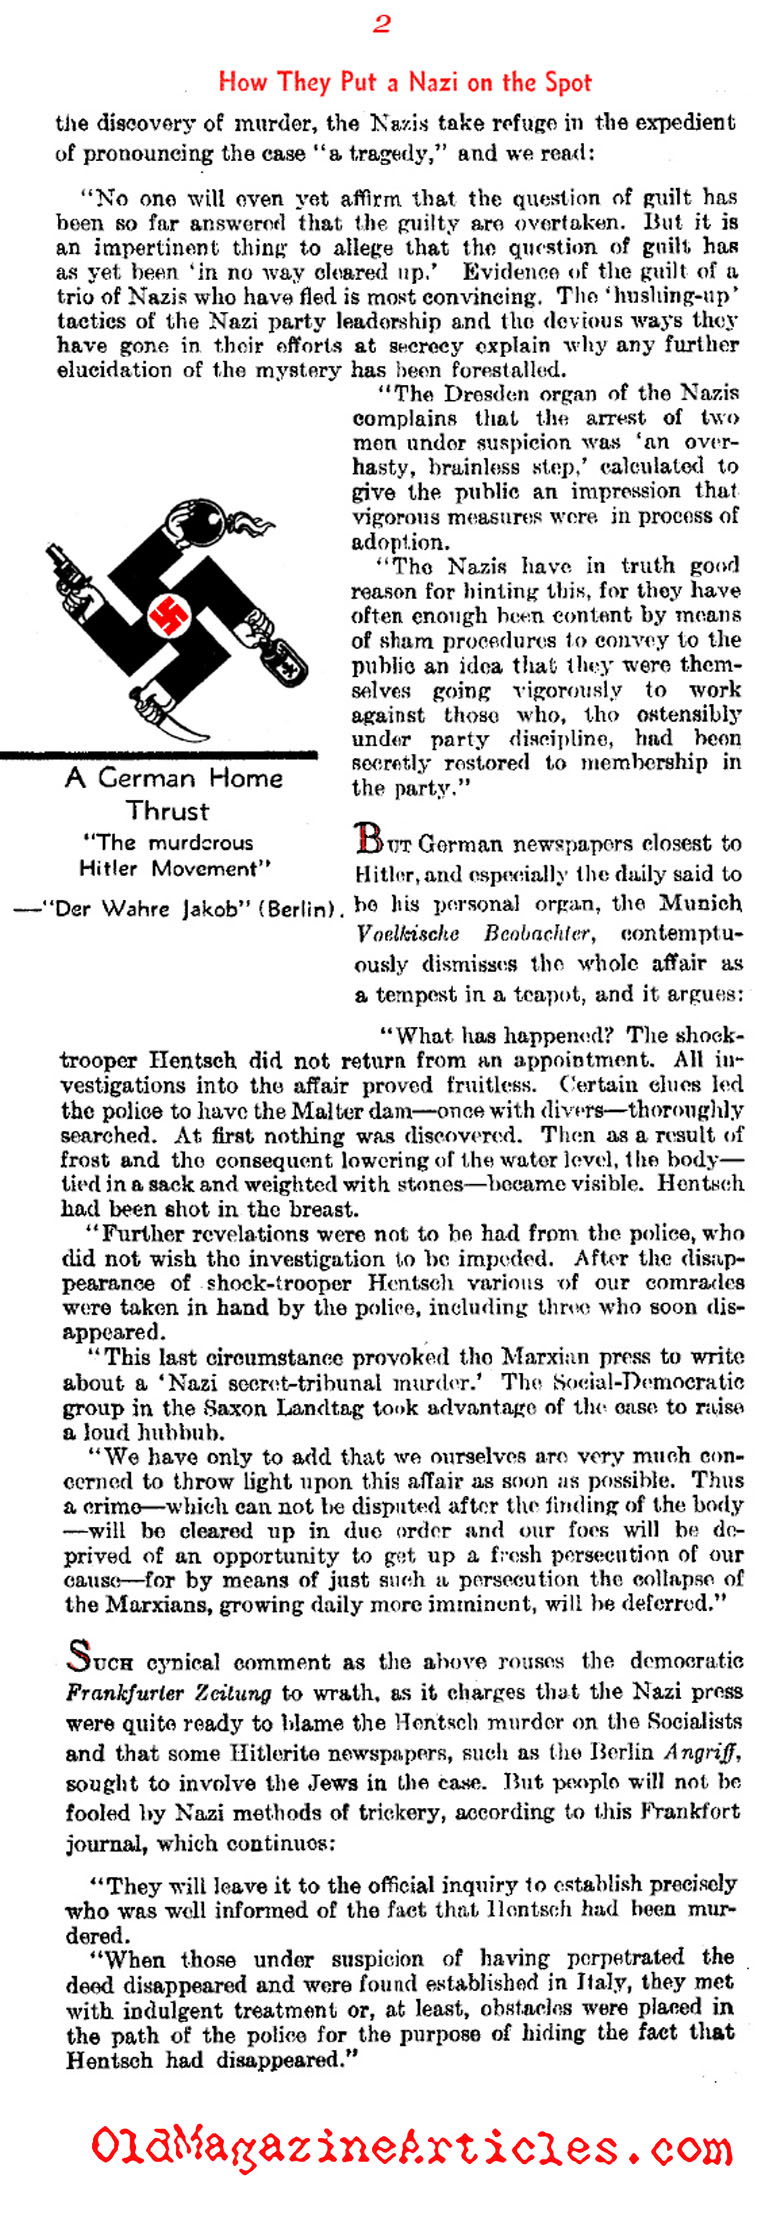 The Murder of SA Stormtrooper Herbert Hentsch (Literary Digest, 1933)